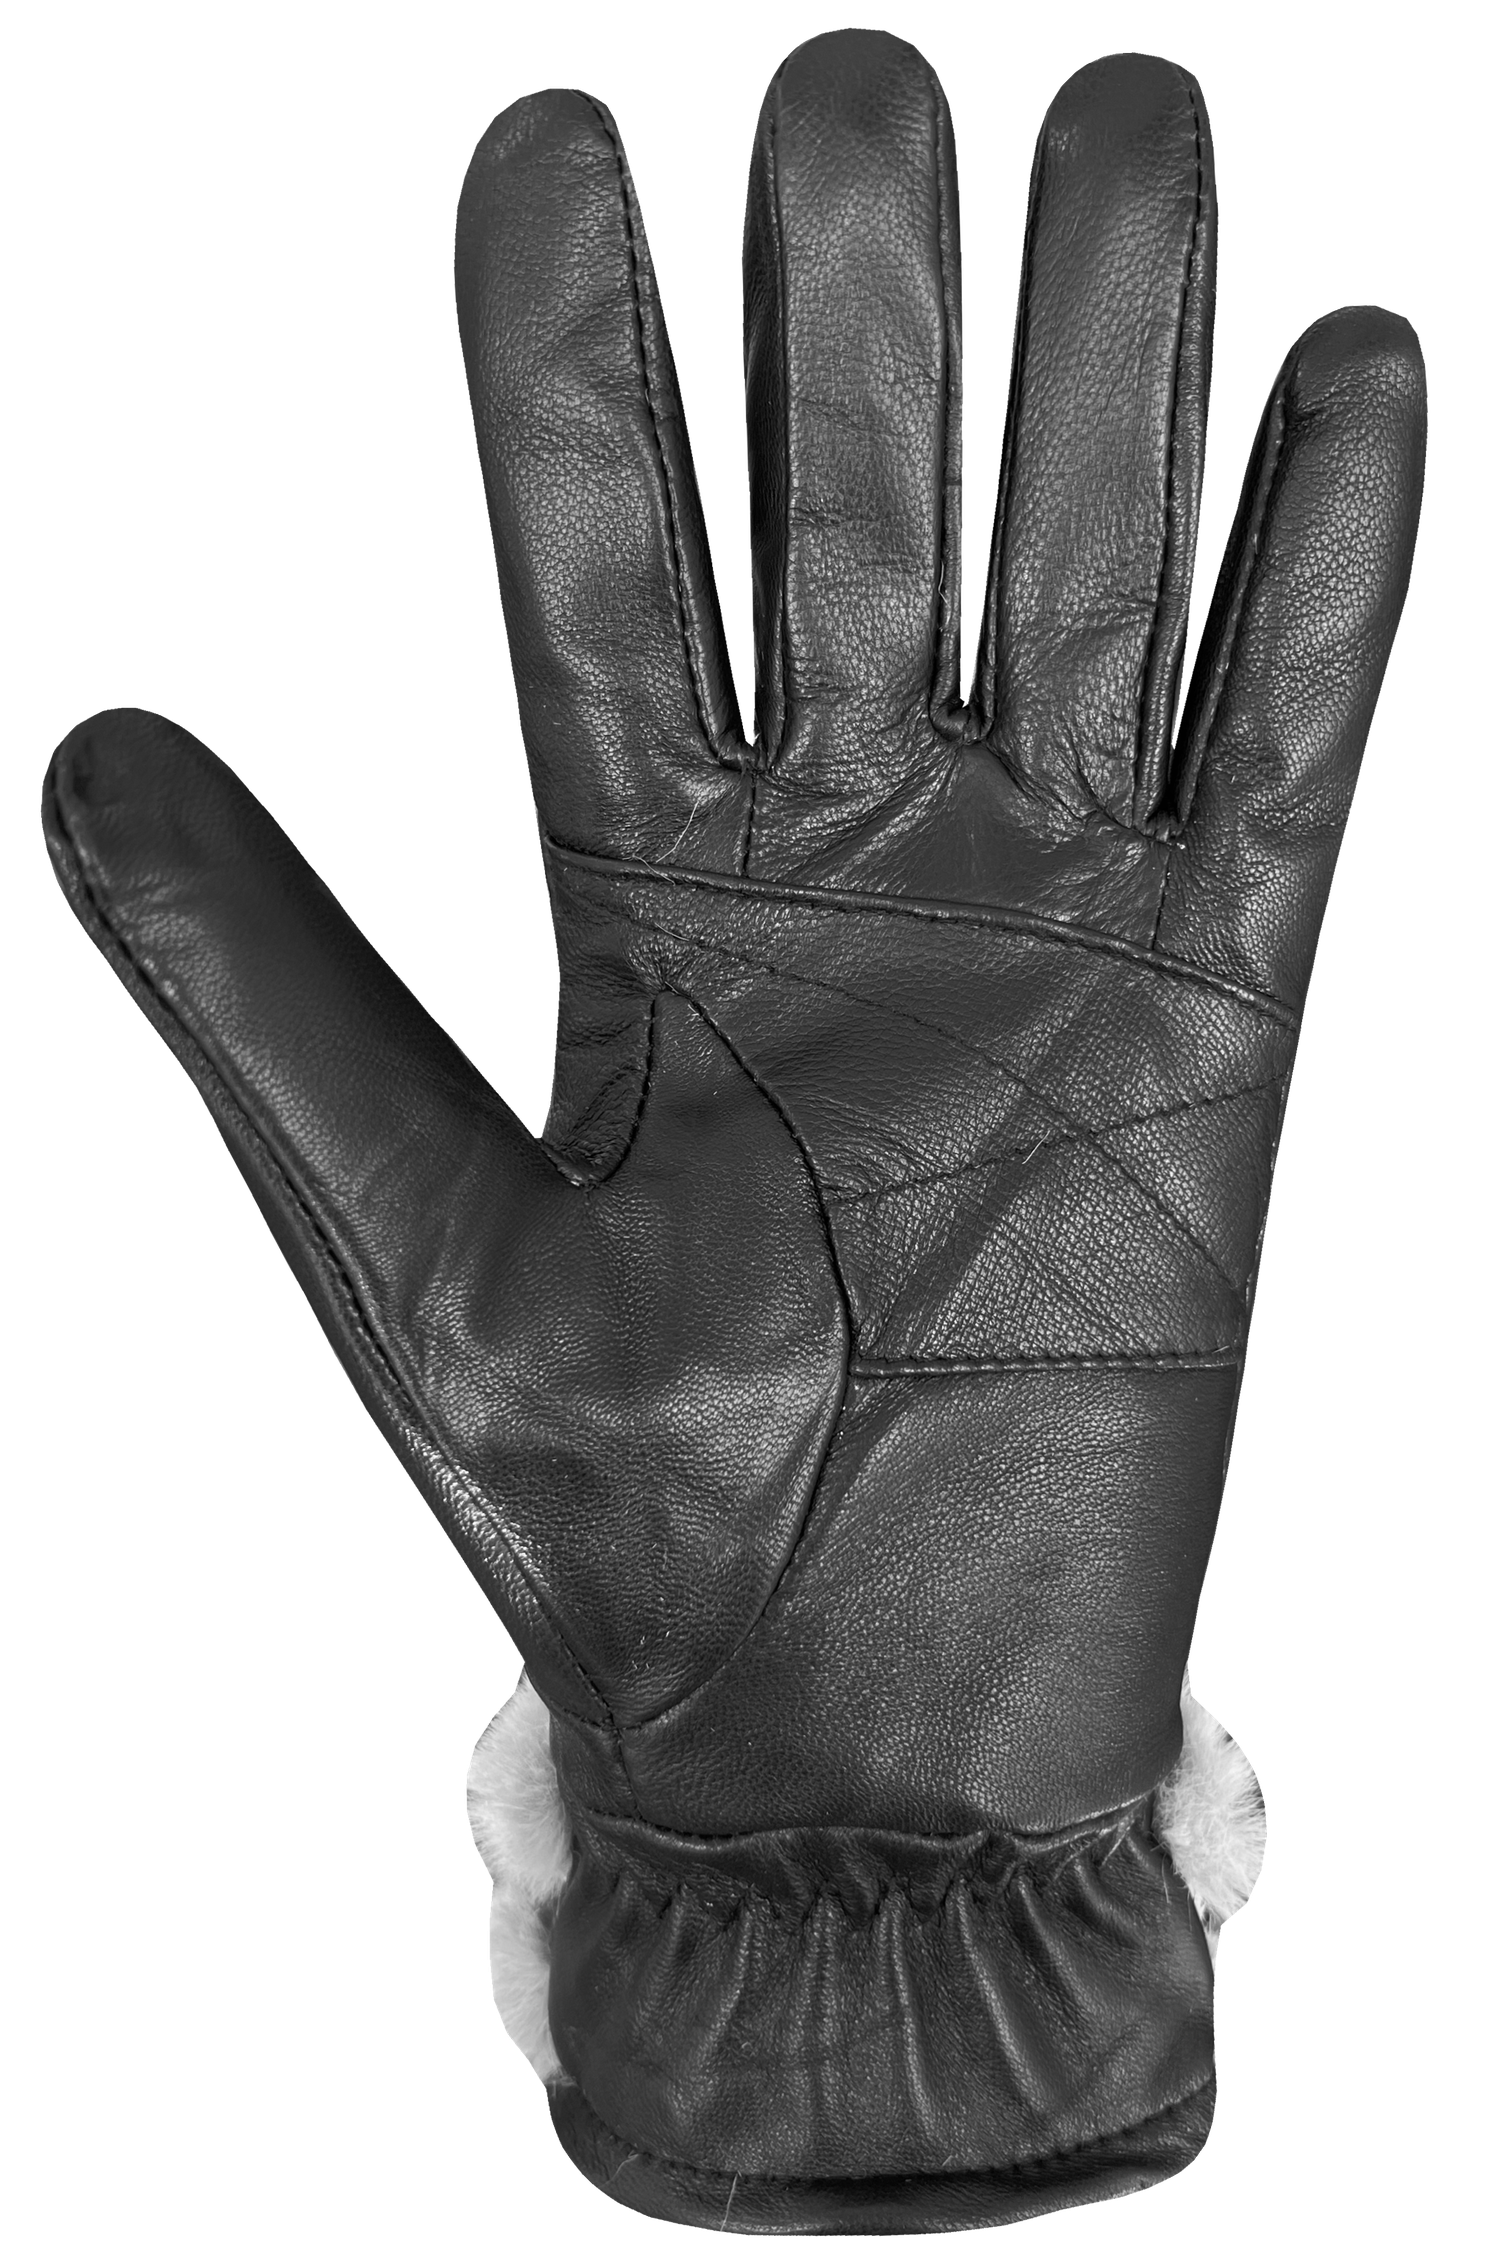 Daphnee II Gloves - Women, Black/Silver